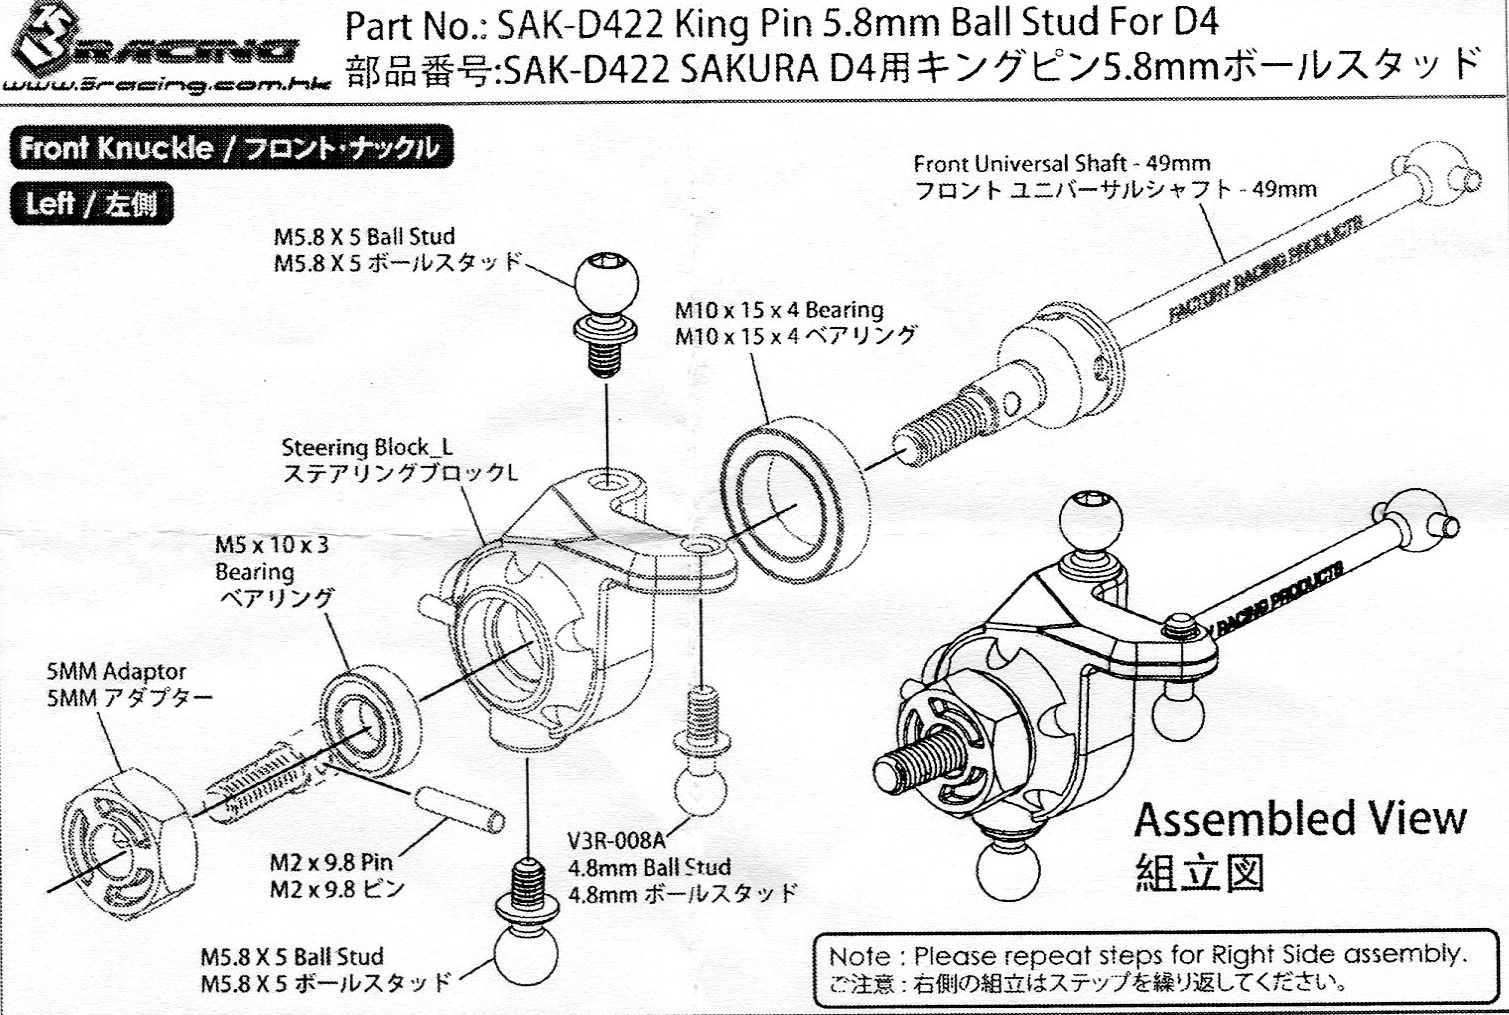 ▲SAKURA D4用キングピン5.8mmボールスタッド,SAK-D422